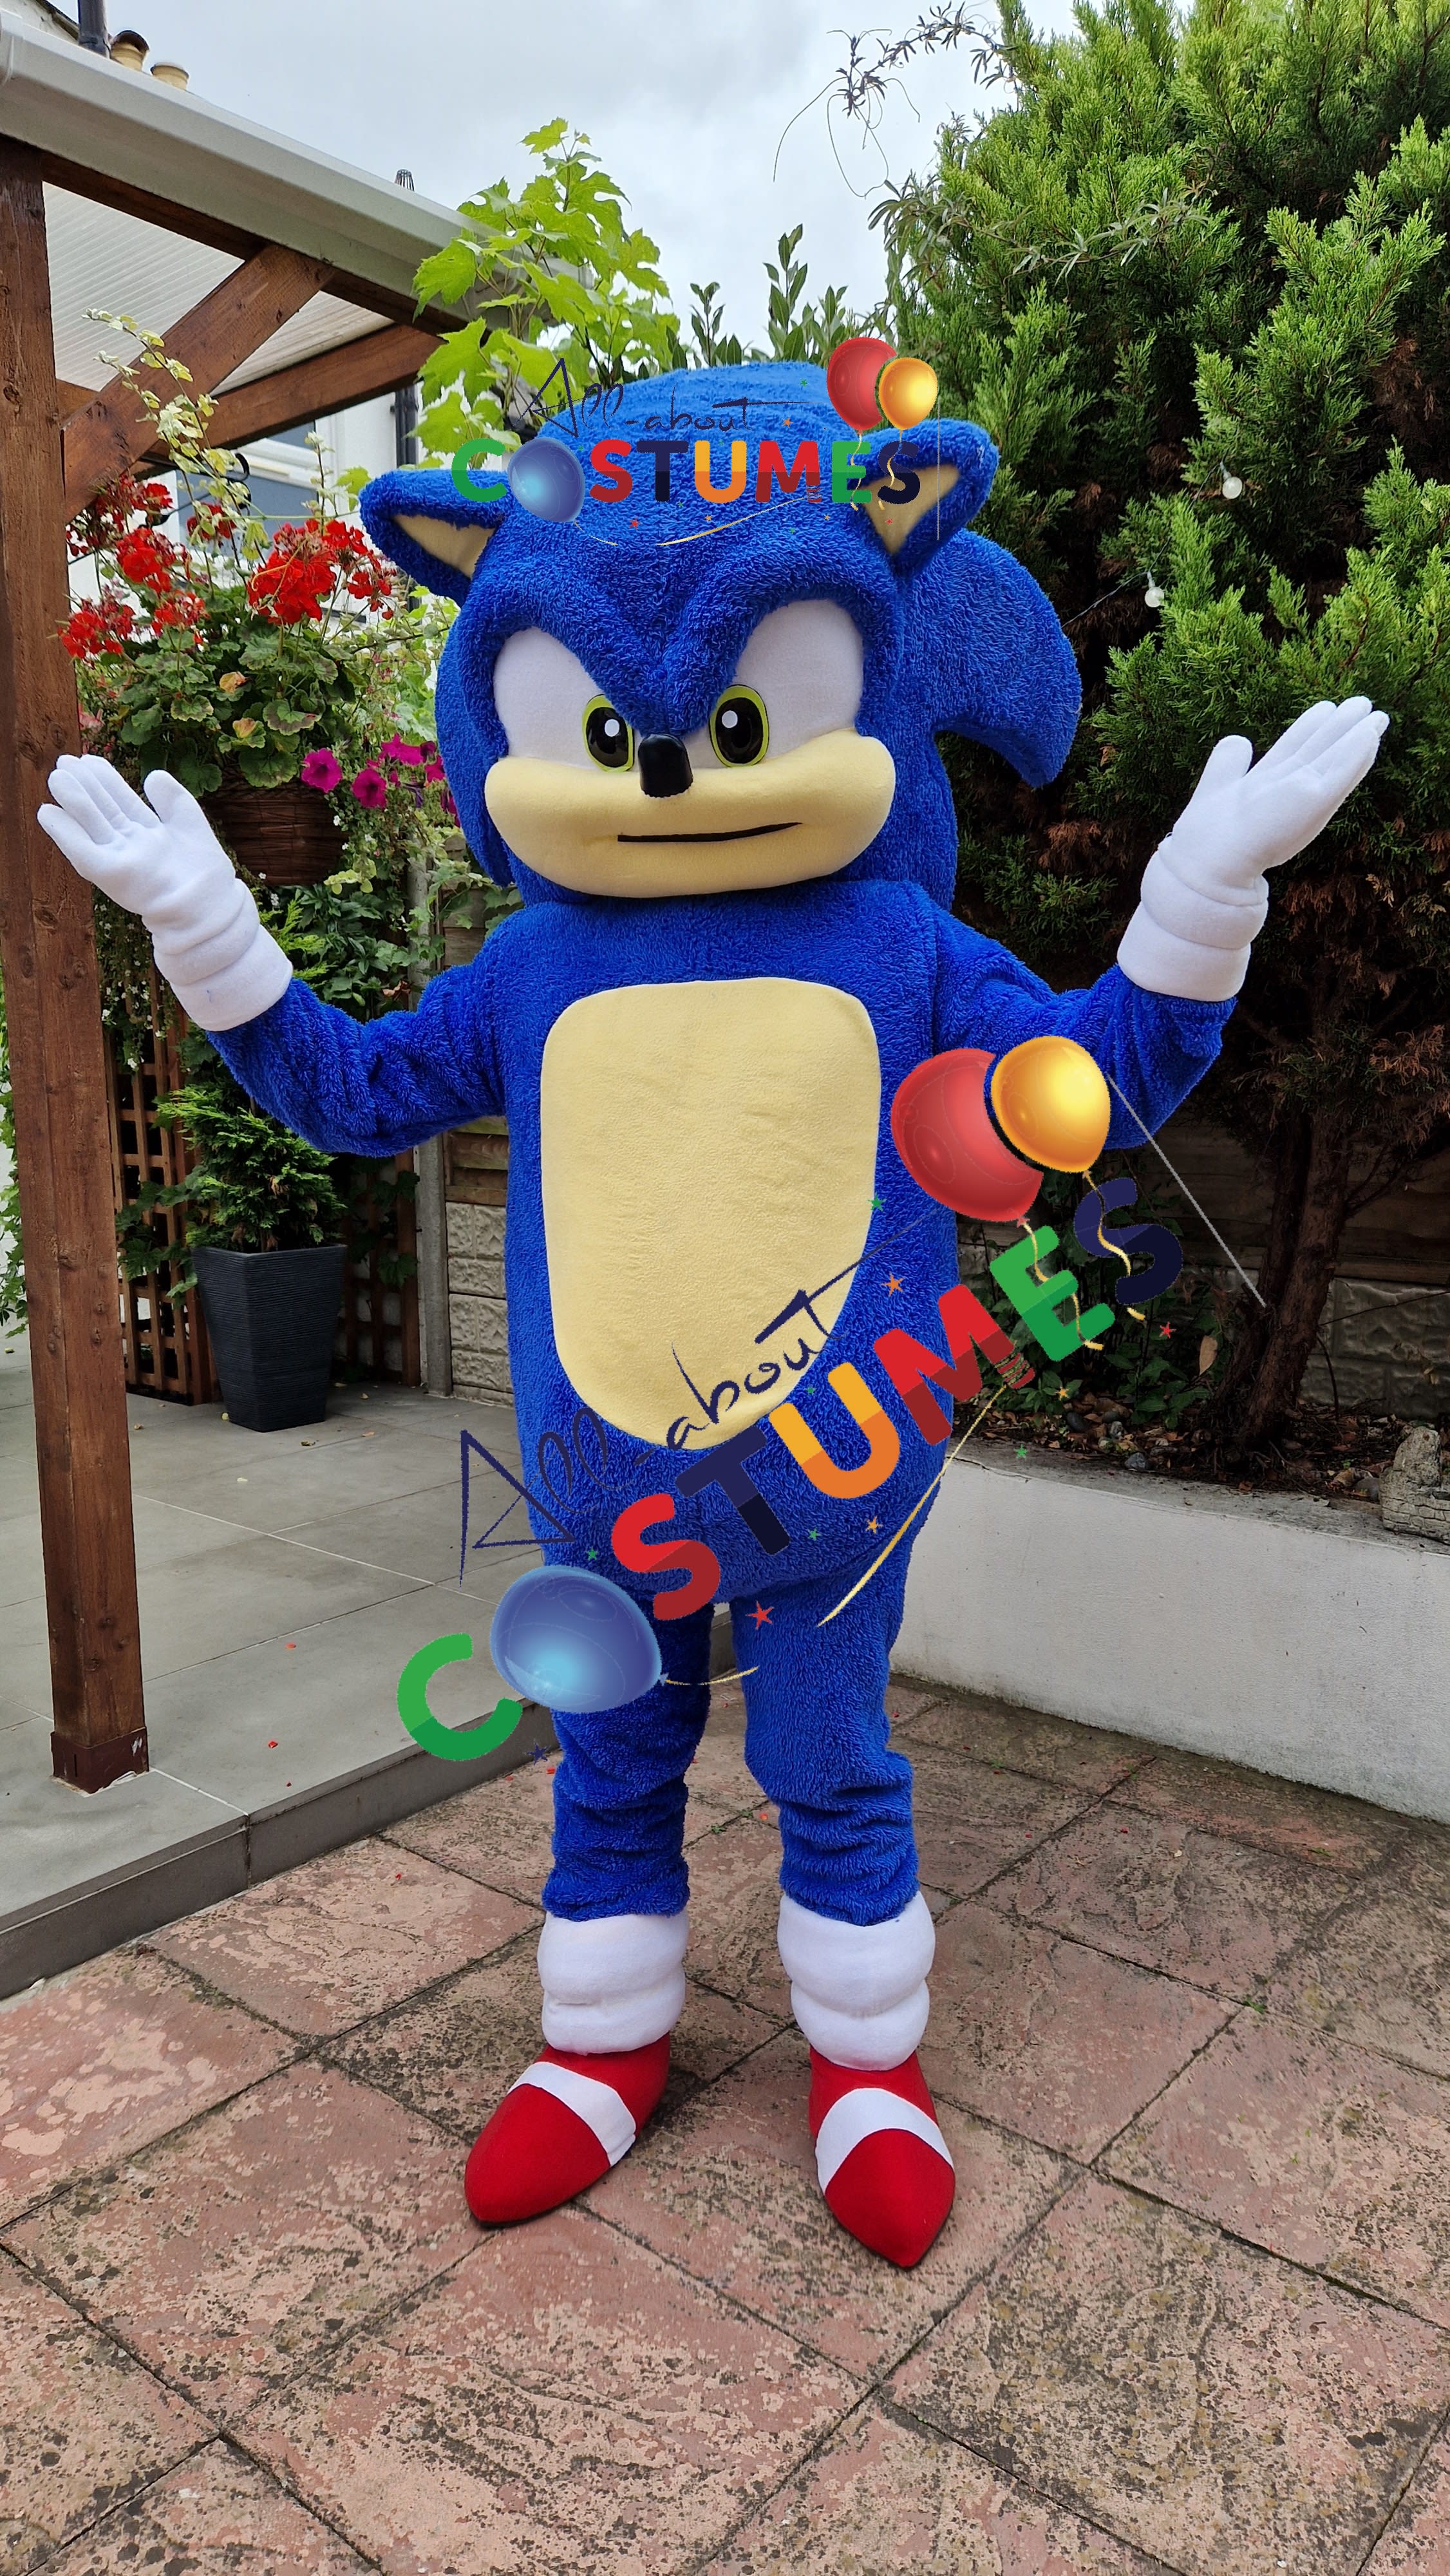 Mascot Costume Sonic